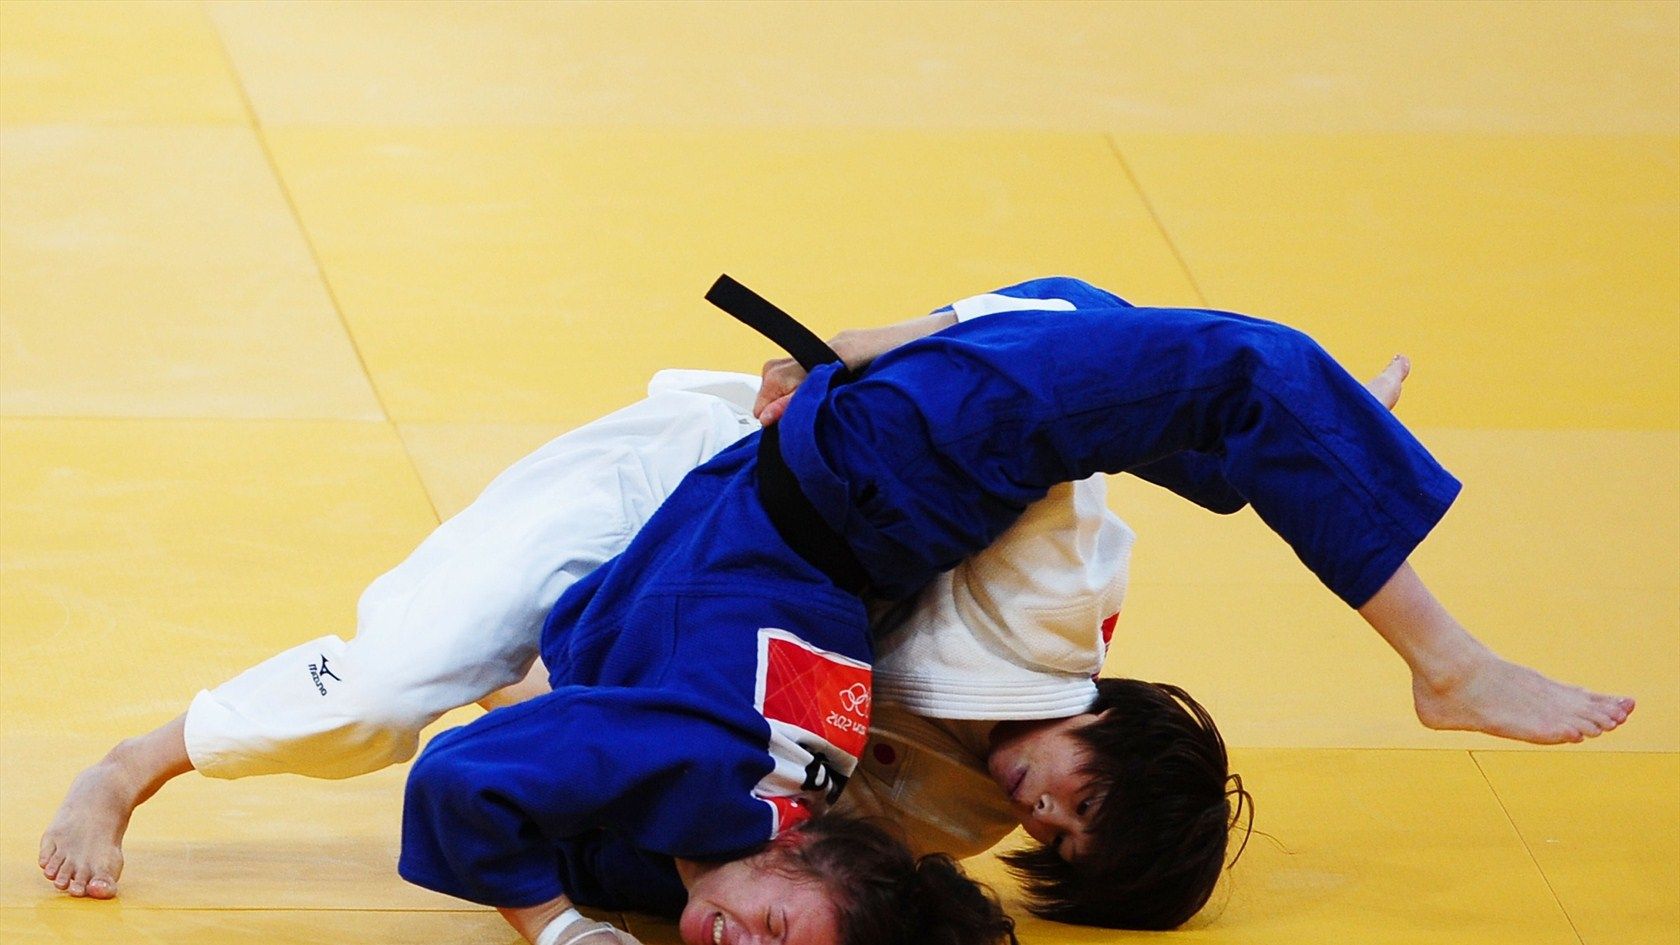 Judo Wallpaper. Judo Wallpaper, USA Judo